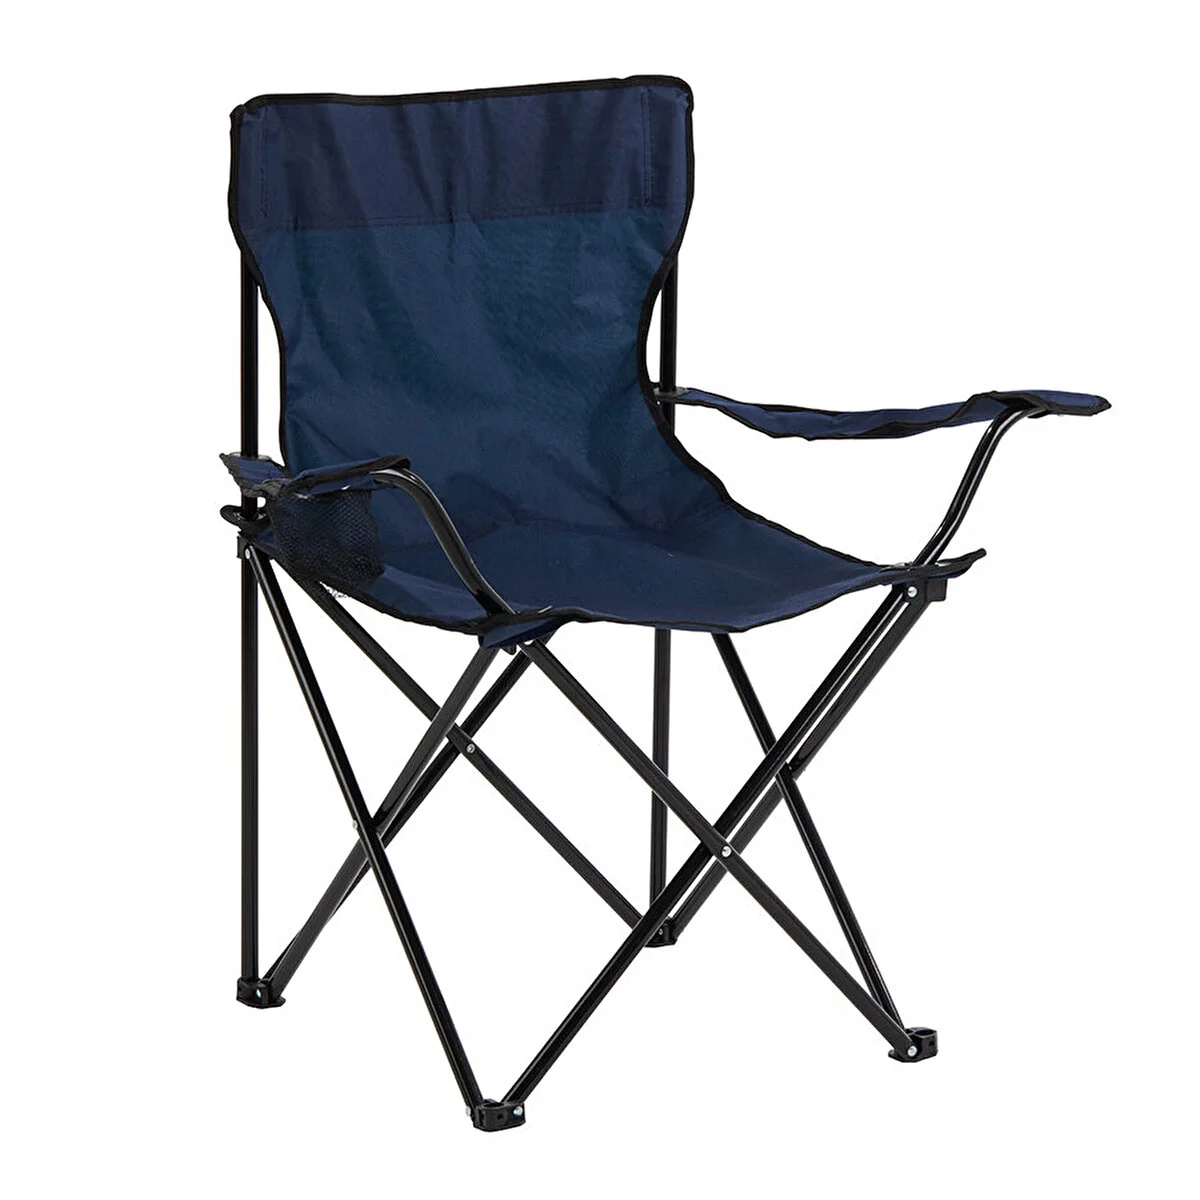  - Basic Metal İskelet Katlanabilir Kamp Sandalyesi Lacivert